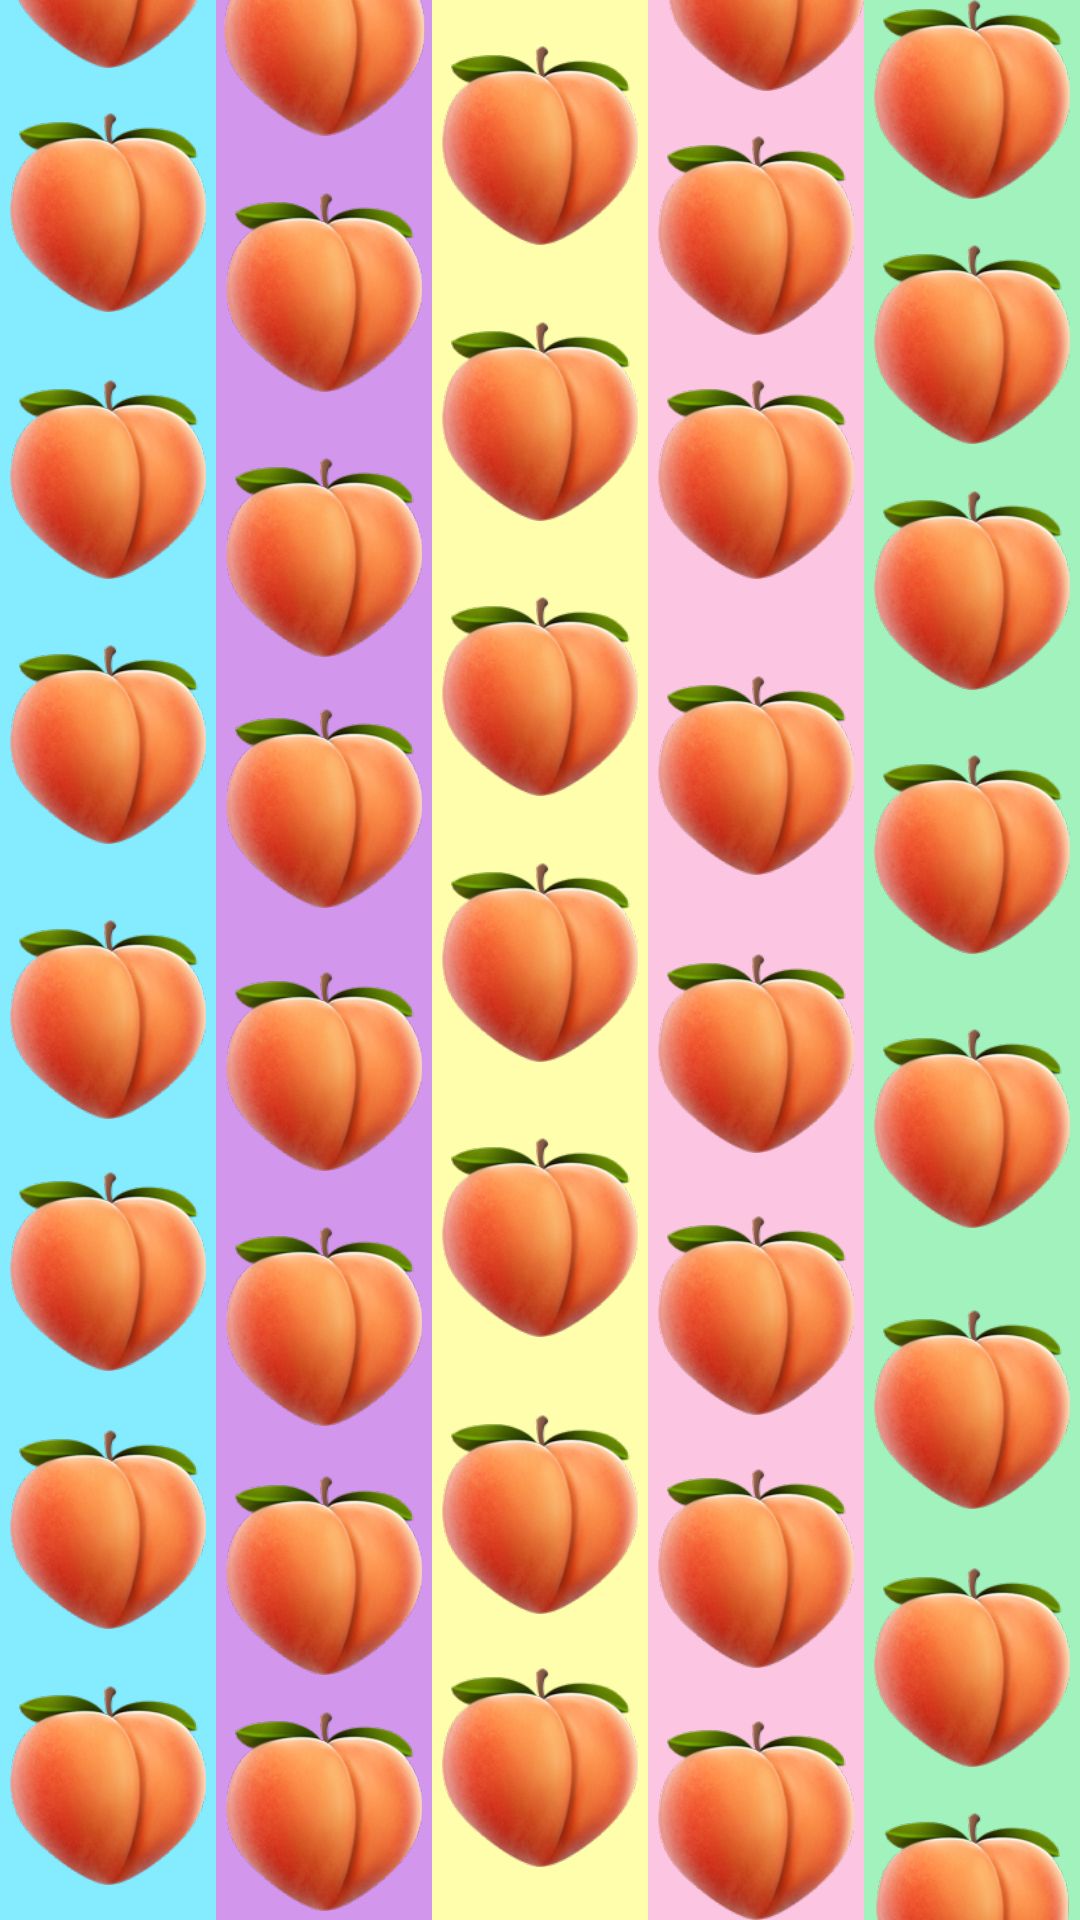 peach emoji wallpaper for iPhone. Emoji wallpaper, iPhone wallpaper, Wallpaper